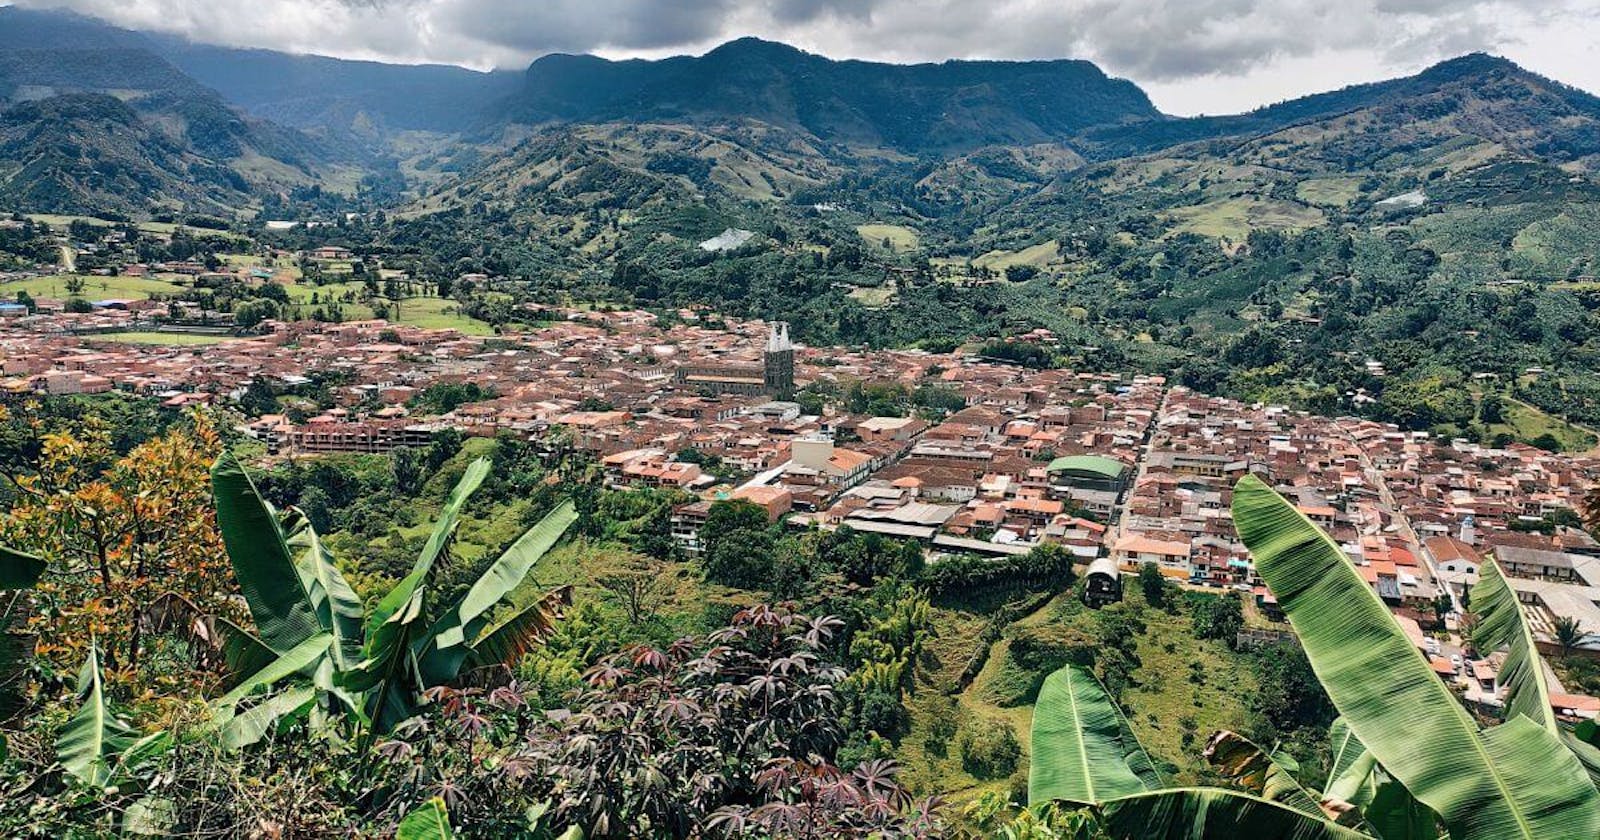 Jardin - kolumbijskie miasteczko zwane ogrodem